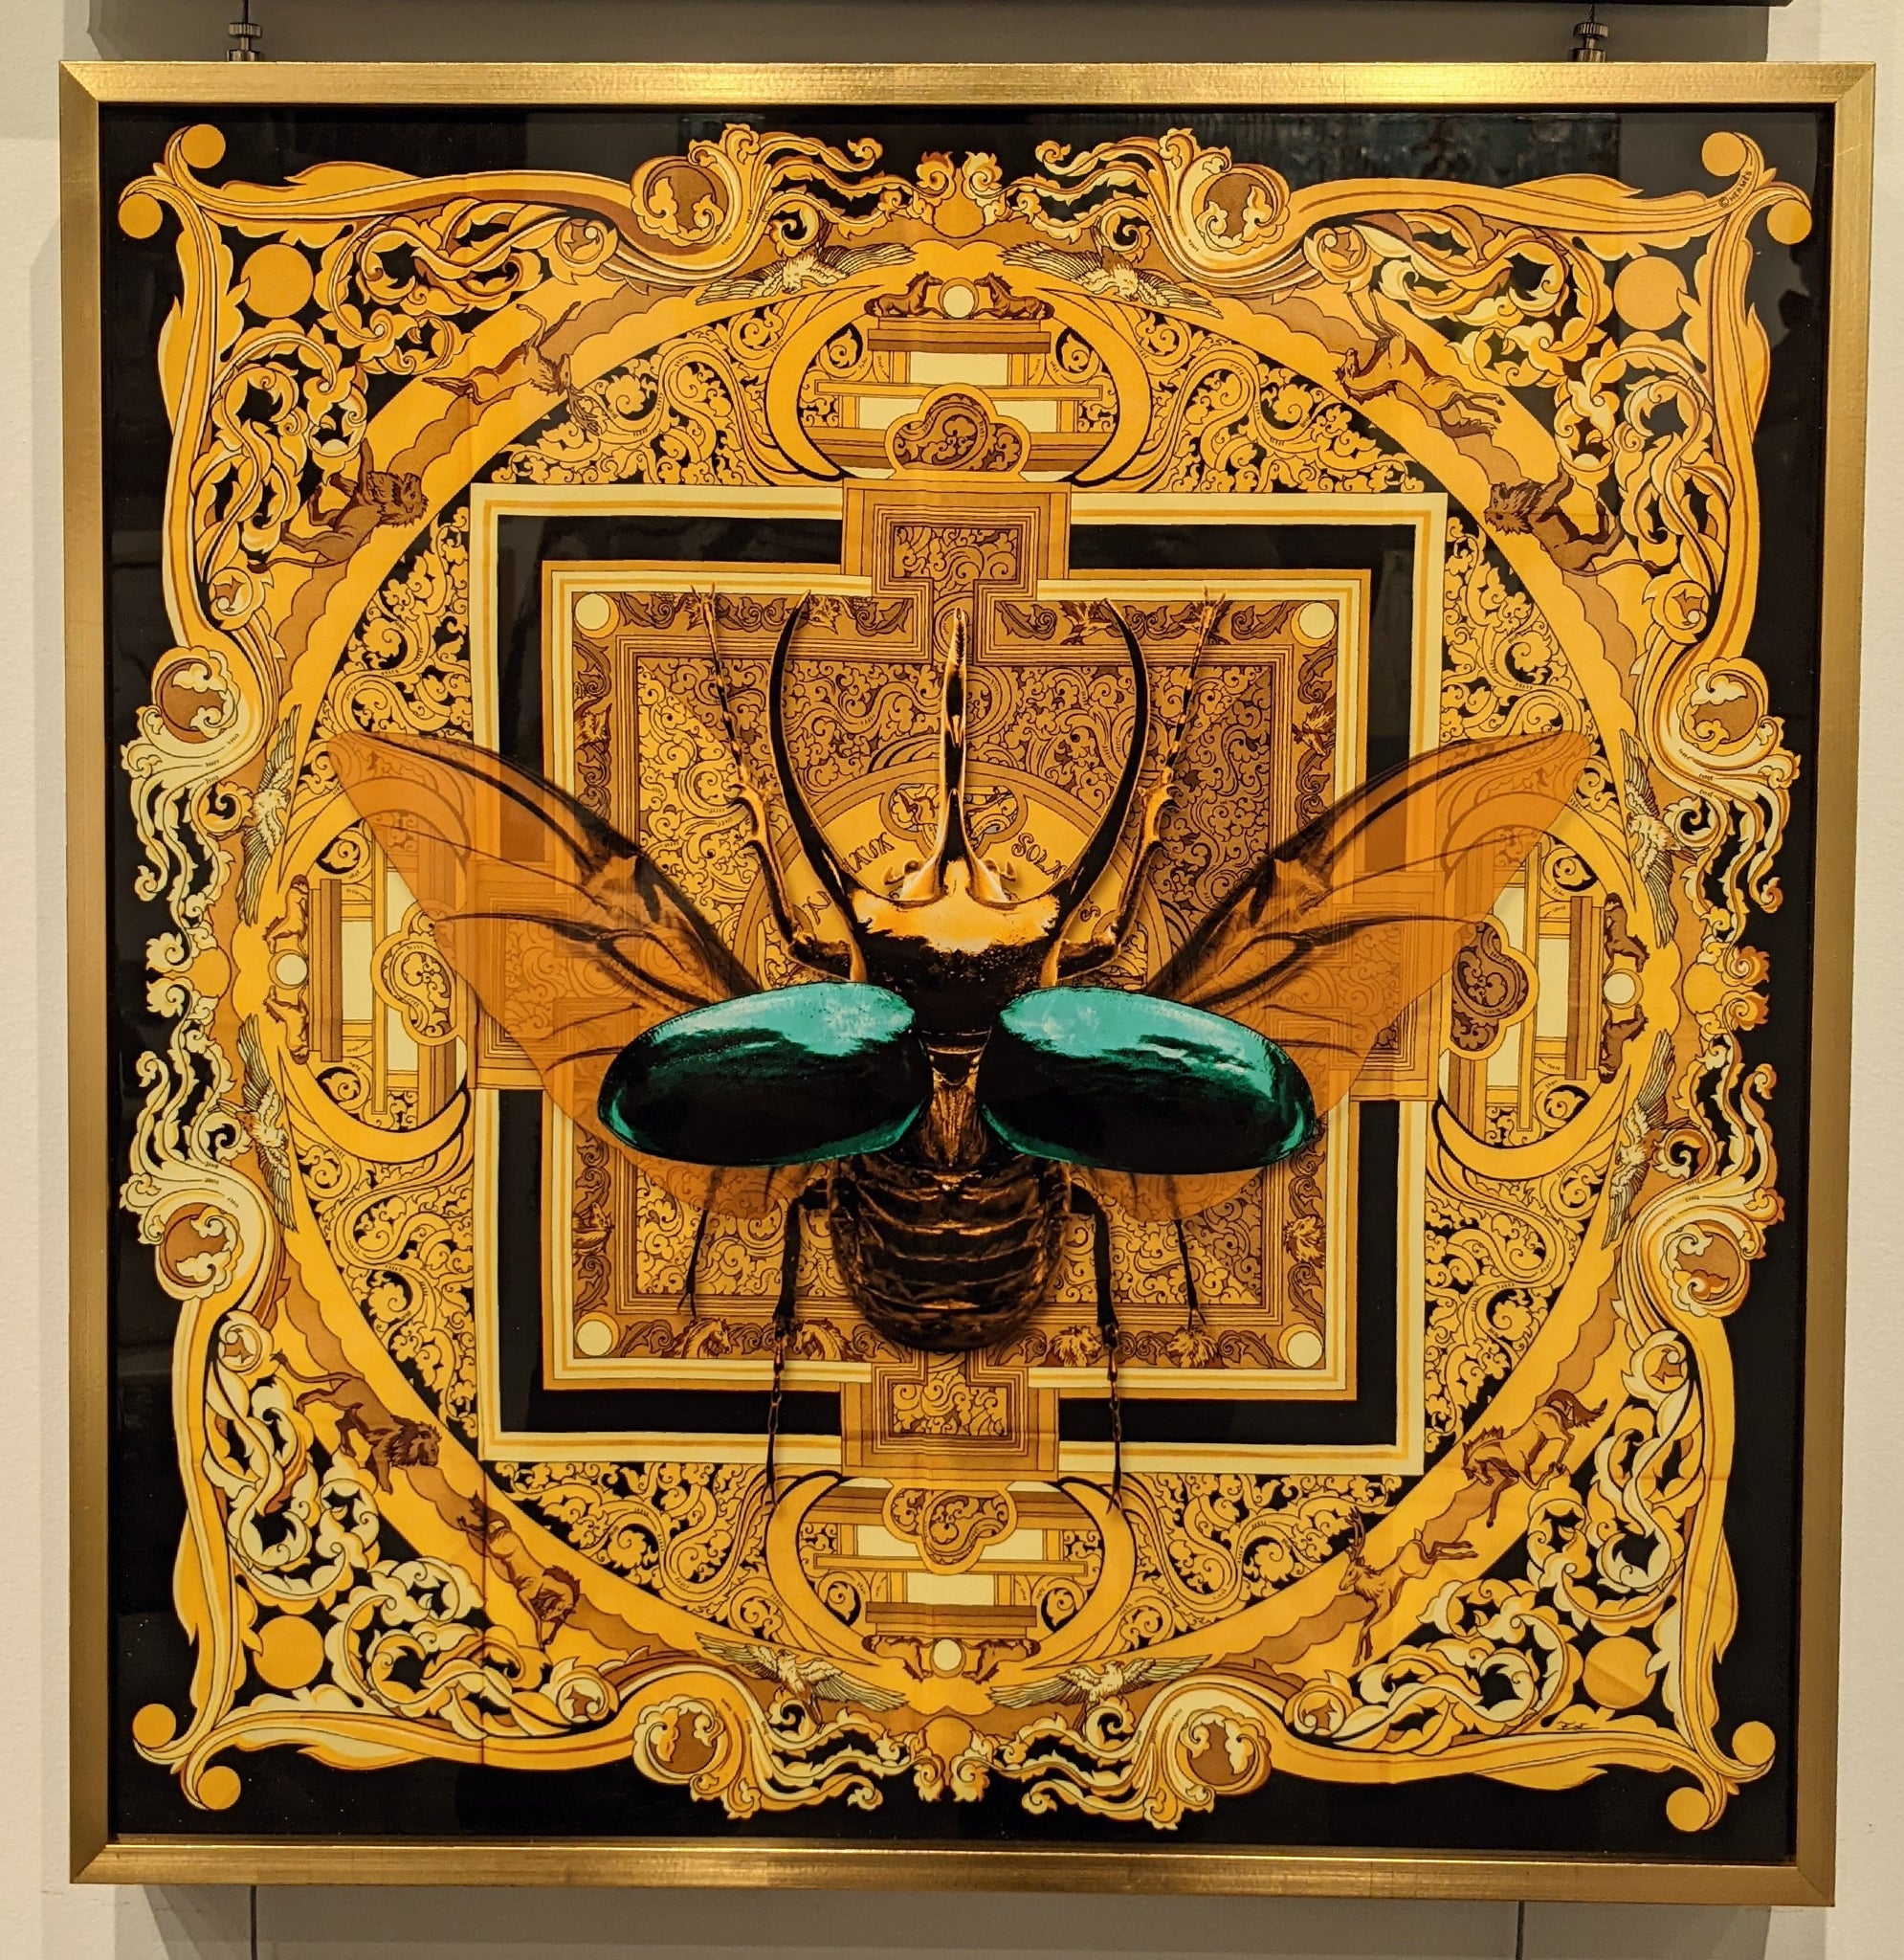 Blue Beetle on Gold Crystal Porcelain Print